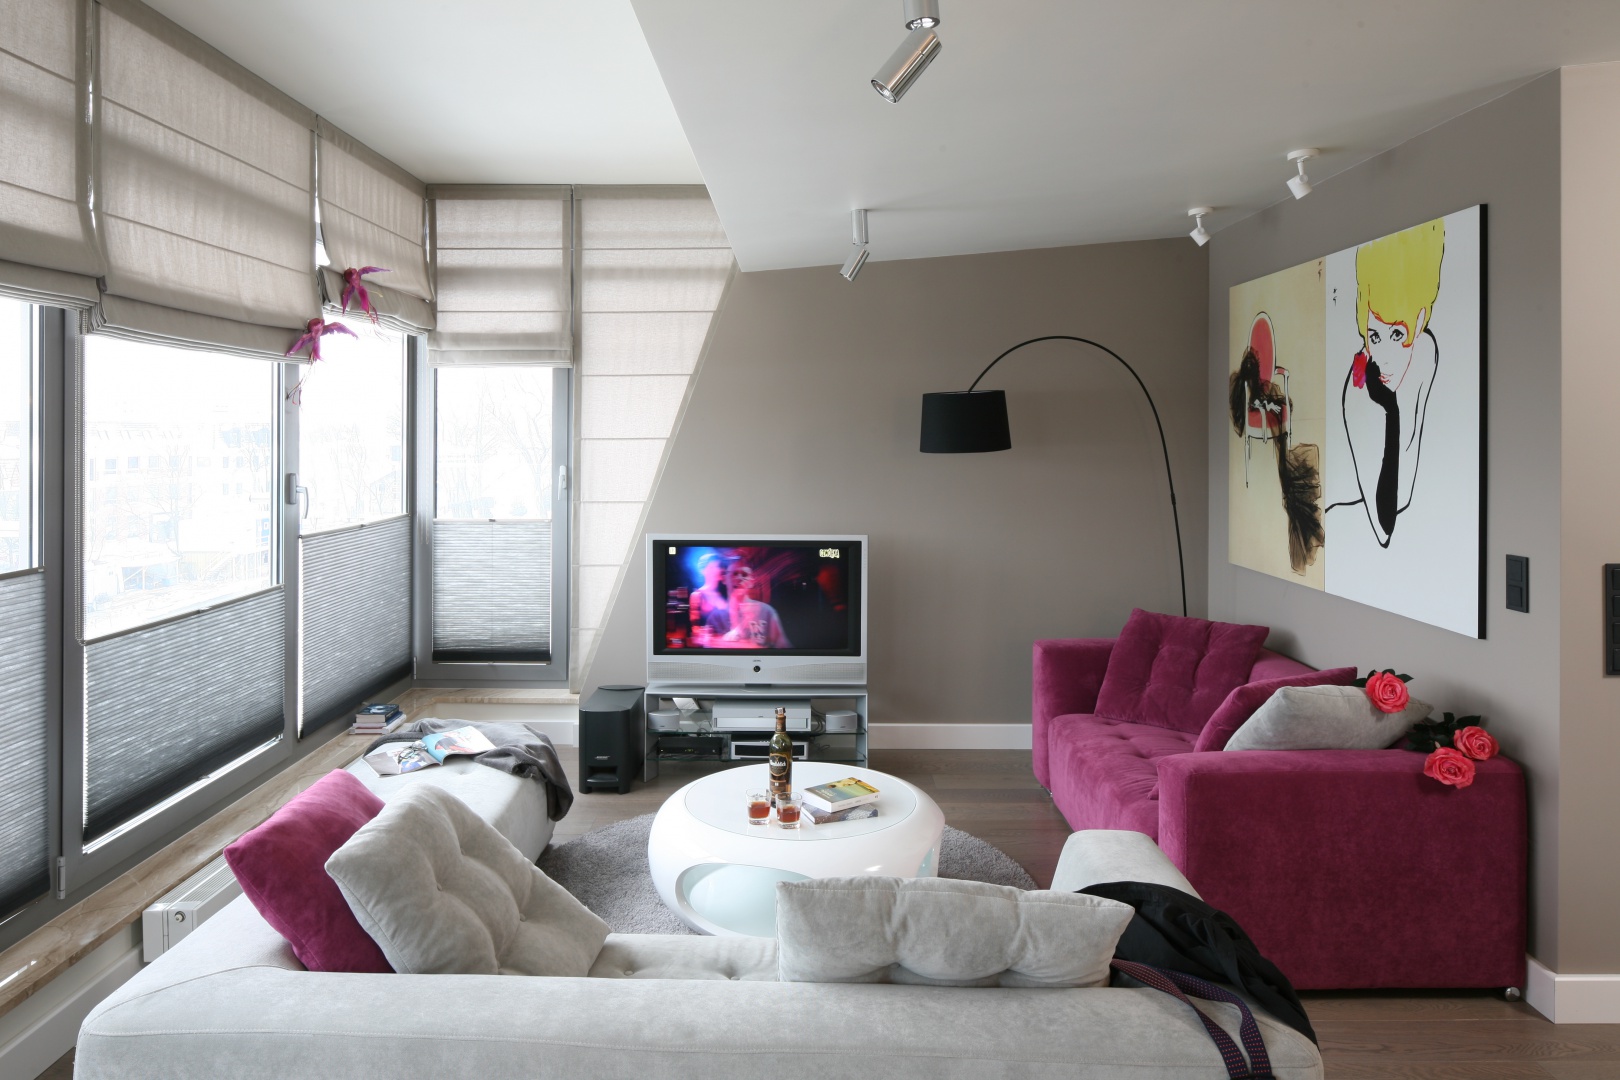 Salon ma charakter nowoczesny, ale nie brakuje w nim elementów stylu glamour jak np. różowe kanapy. Projekt: Małgorzata Borzyszkowska. Fot. Bartosz Jarosz